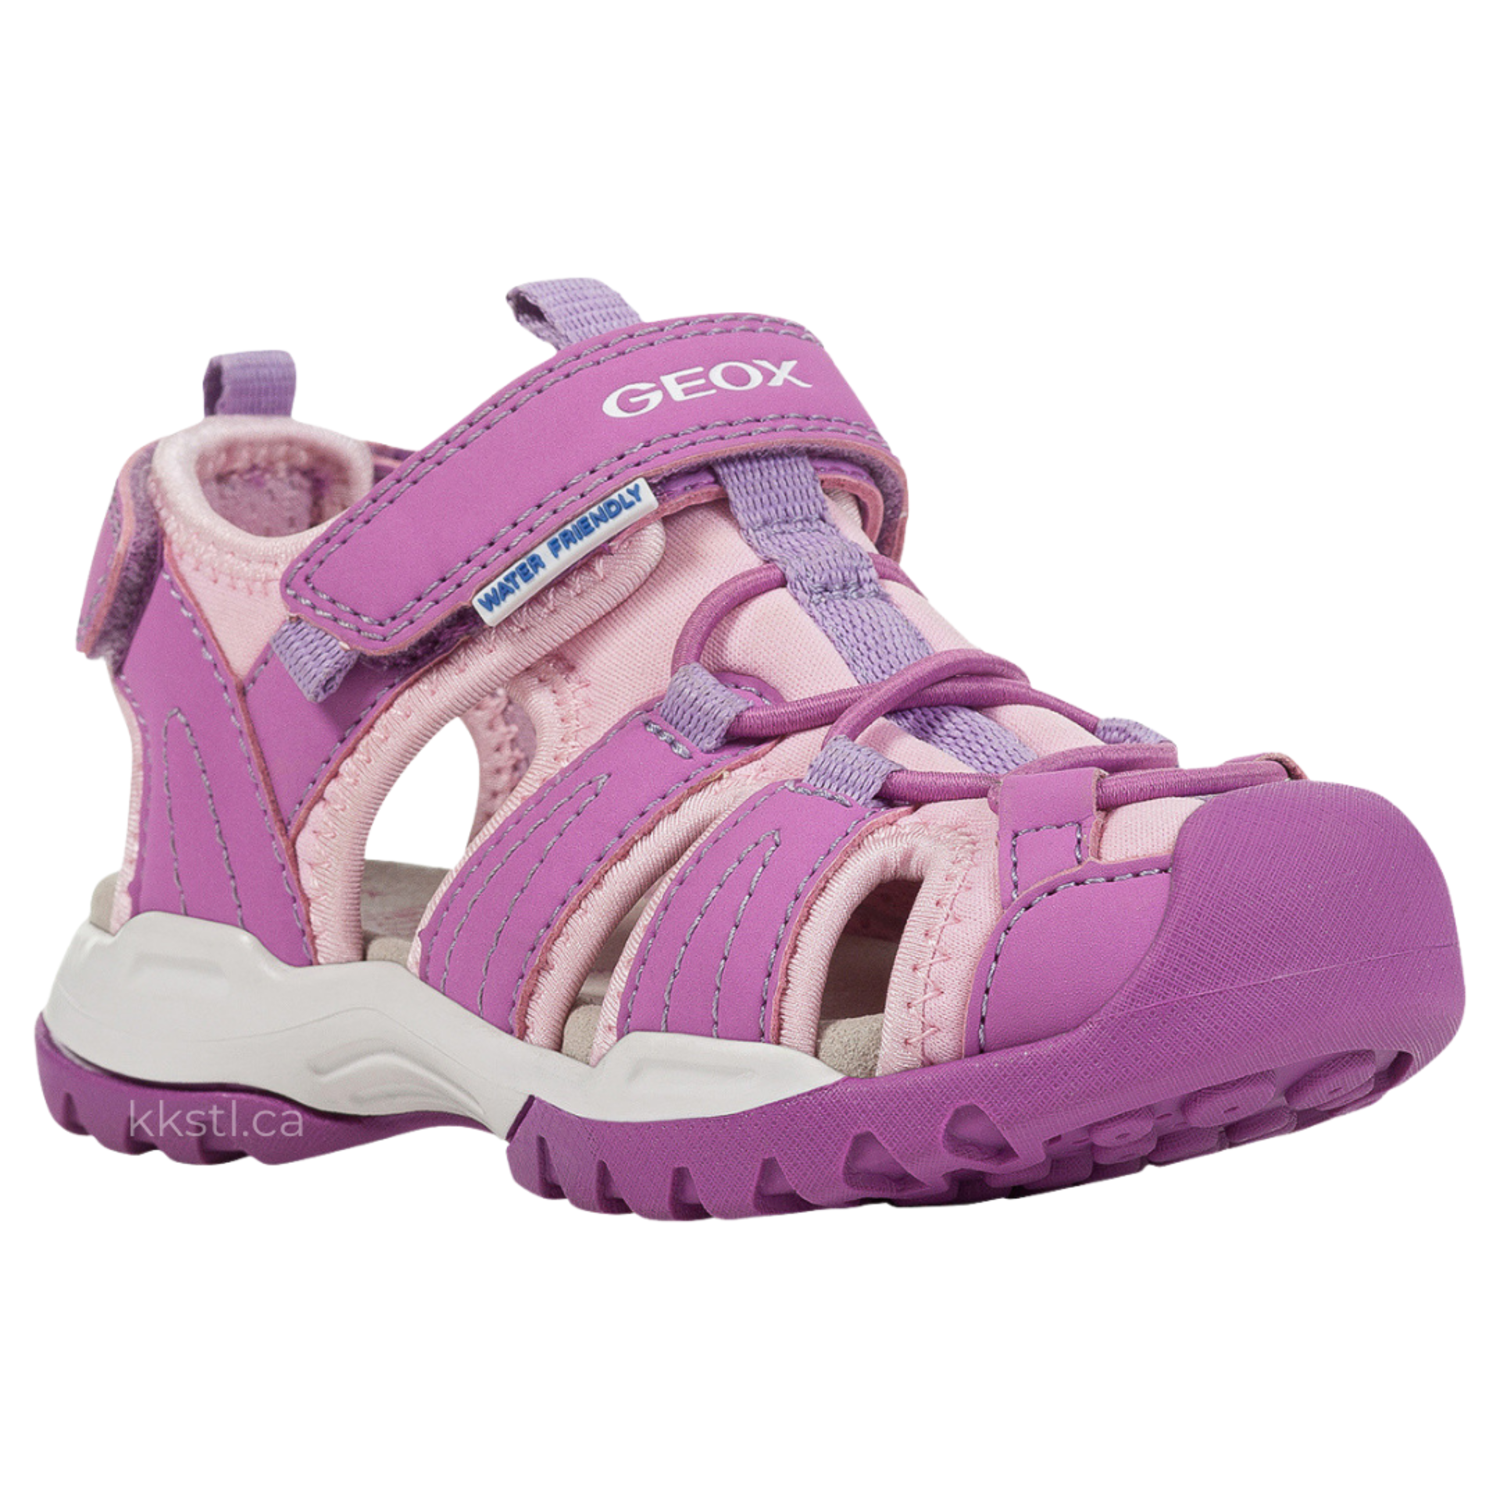 Geox J Borealis Purple/Pink Kids Shoes in Canada - Kiddie Kobbler St Laurent